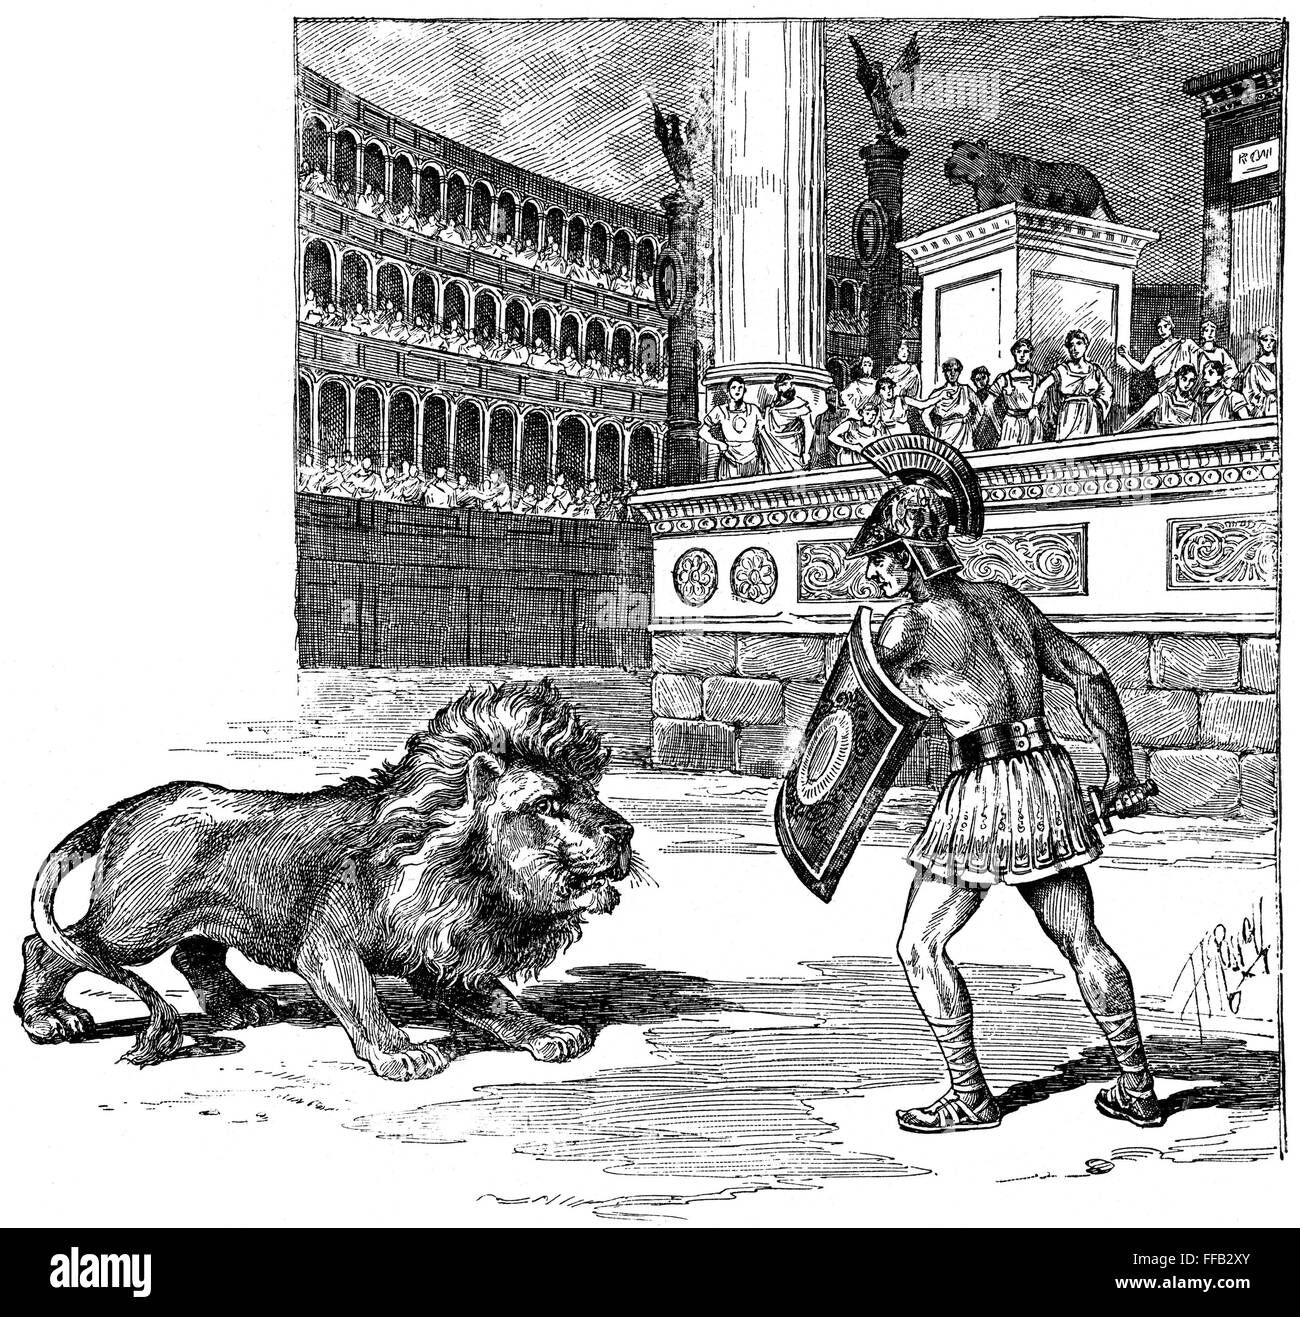 Древний рим иллюстрации 5